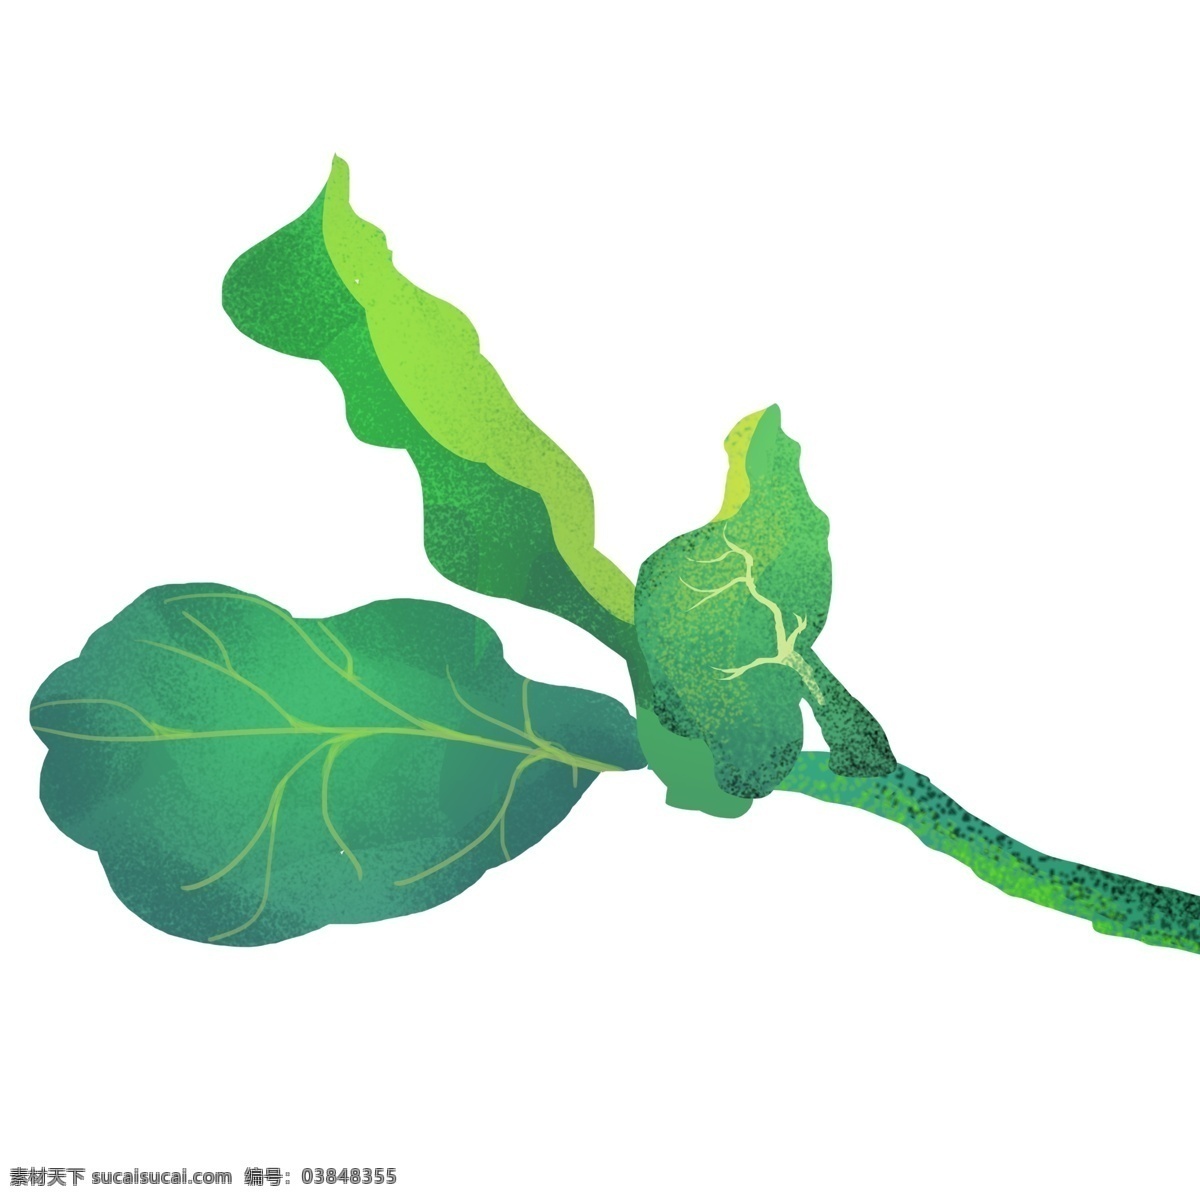 绿色 植物 叶子 插画 绿色的叶子 卡通插画 叶子插画 树叶插画 花叶插画 植物插画 蔬菜的叶子